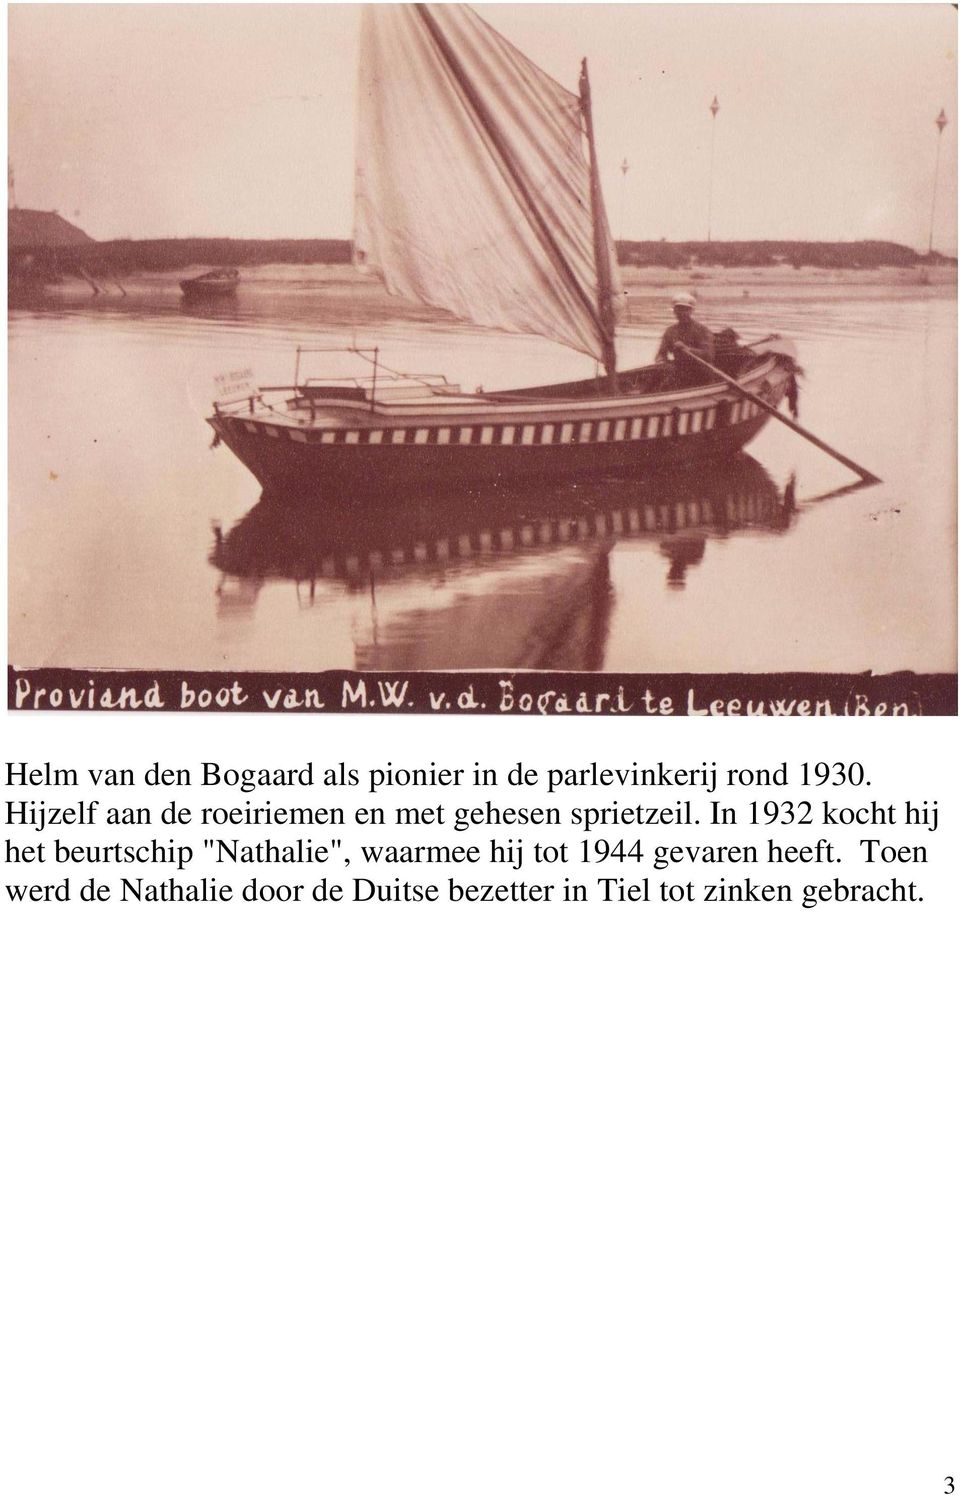 In 1932 kocht hij het beurtschip "Nathalie", waarmee hij tot 1944